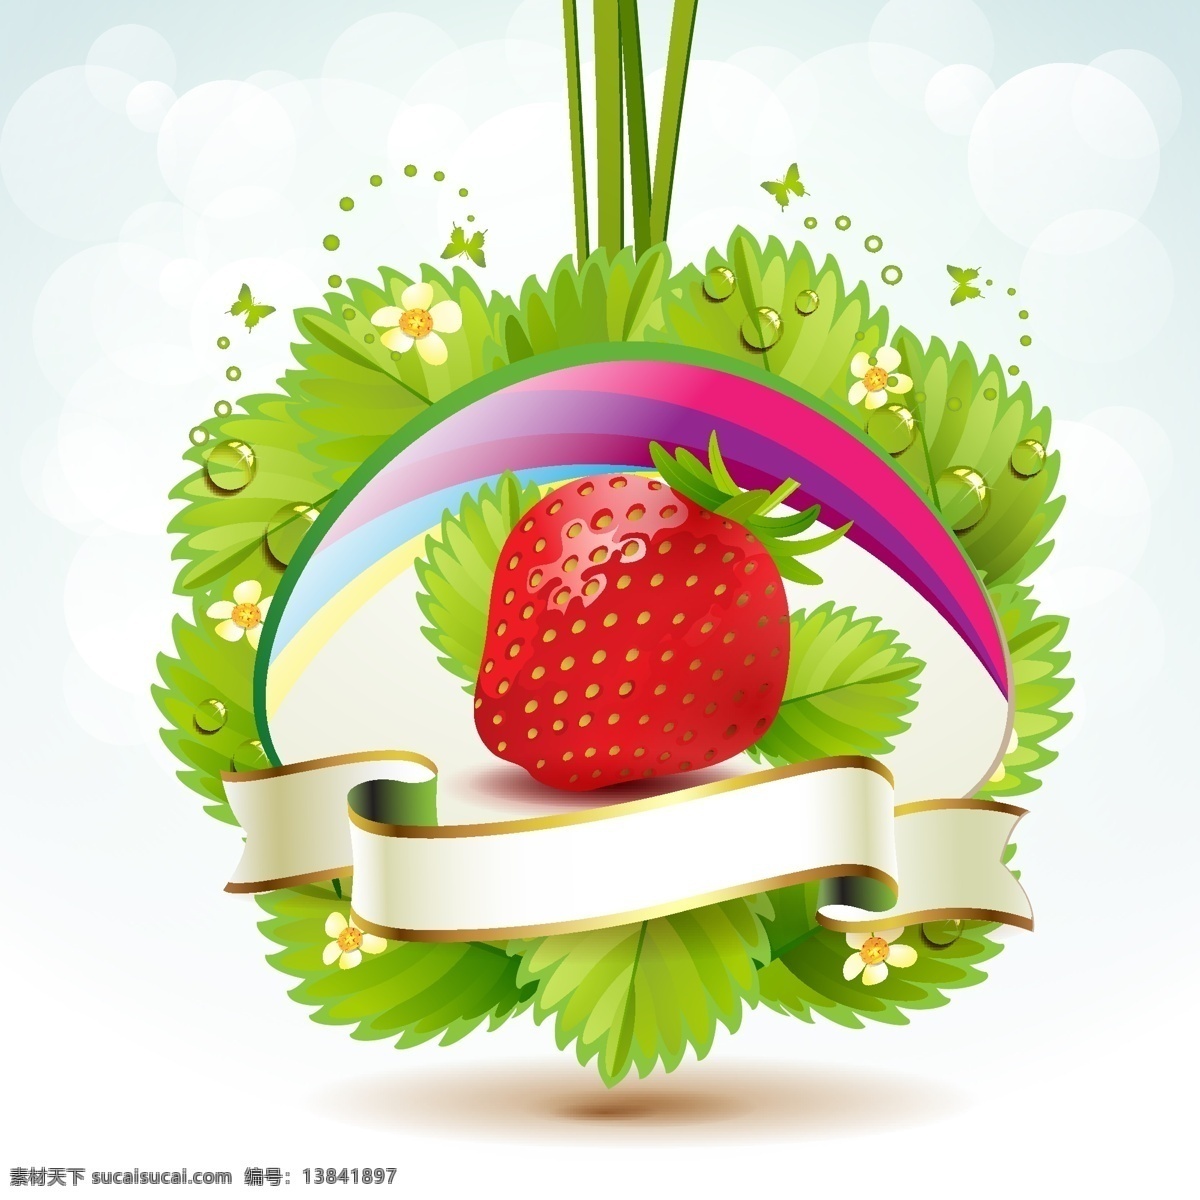 背景 标签 草莓 底纹 蝴蝶 健康 卡片 绿色 绿叶 鲜花 矢量 模板下载 水珠 水滴 时尚 梦幻 水果矢量 水果 生物世界